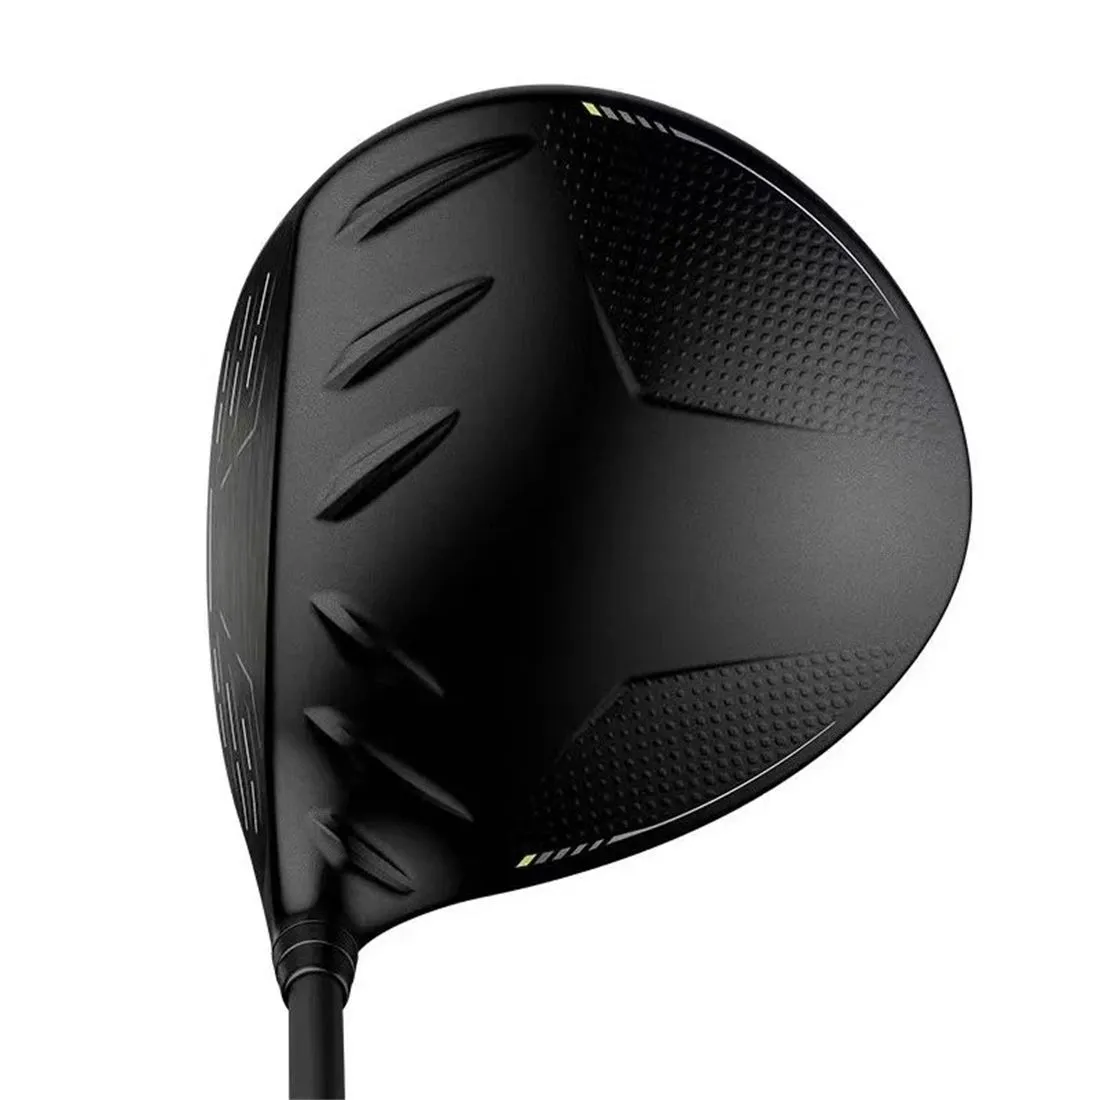 Club Heads 430 Max Driver Golf Clubs 9 10.5 Degrees R S SR X Flex Graphite Shaft Head Cover